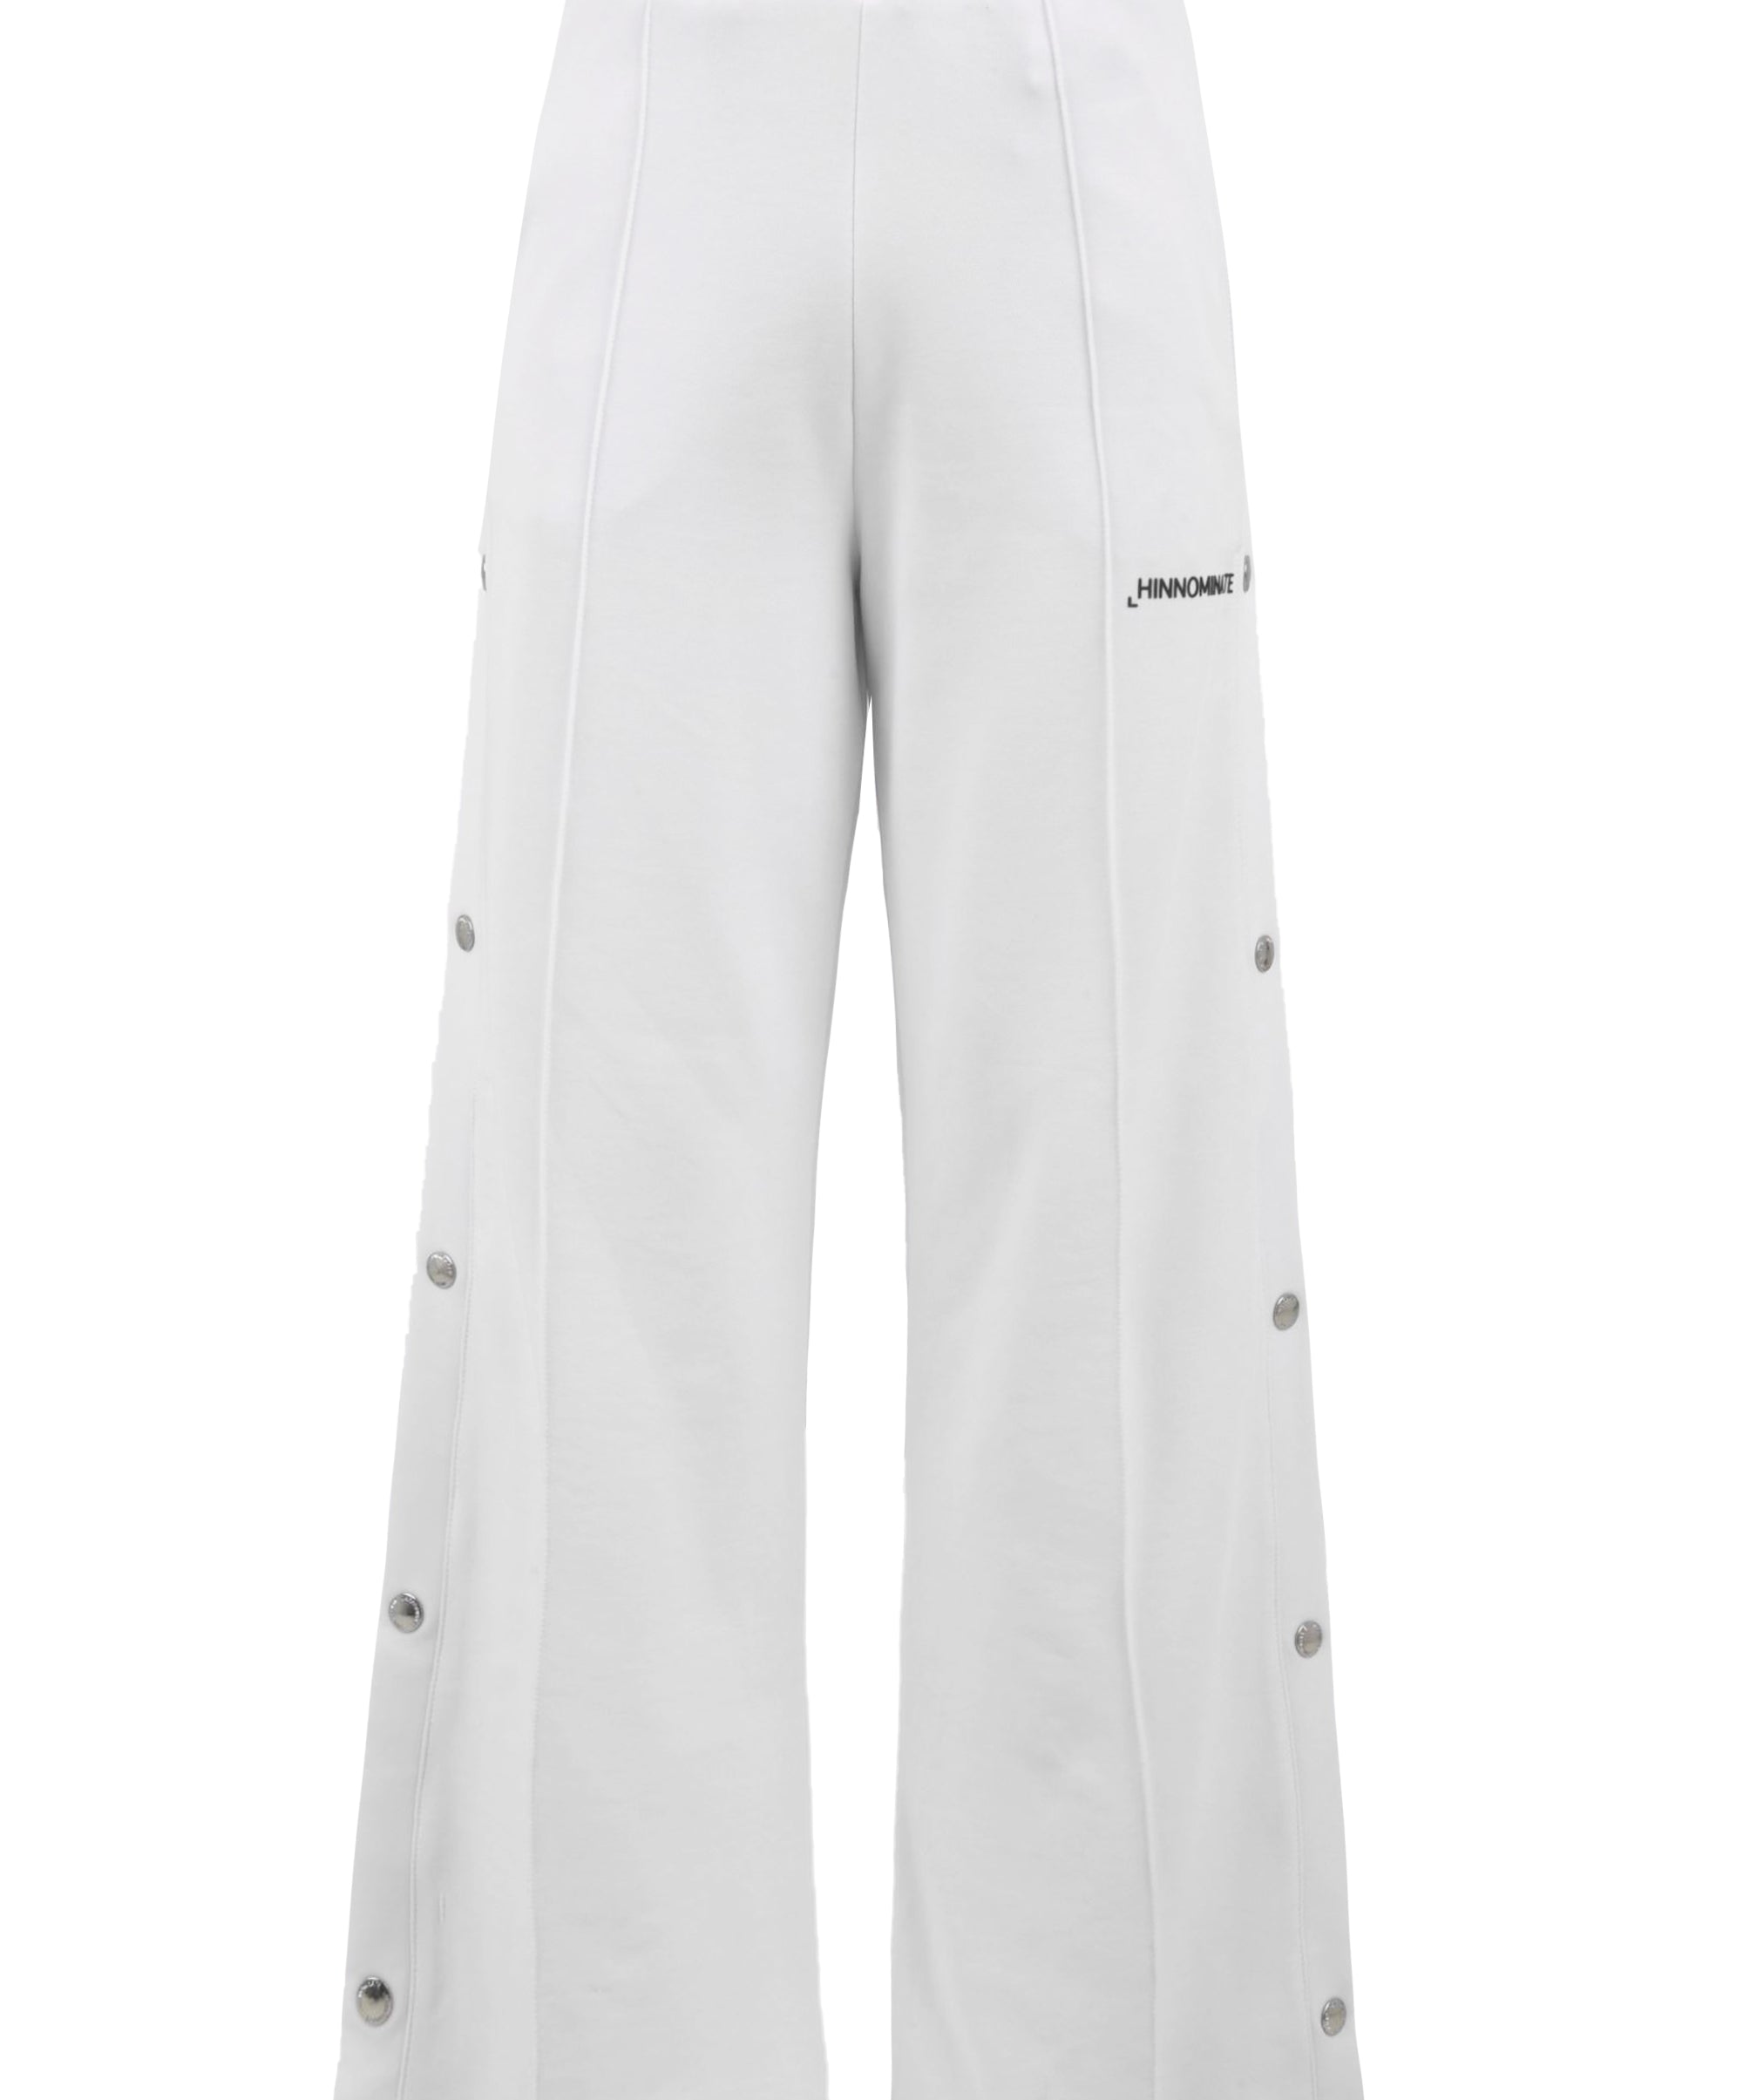 Pantalone donna bianco con bottoni laterali e stampa lettering